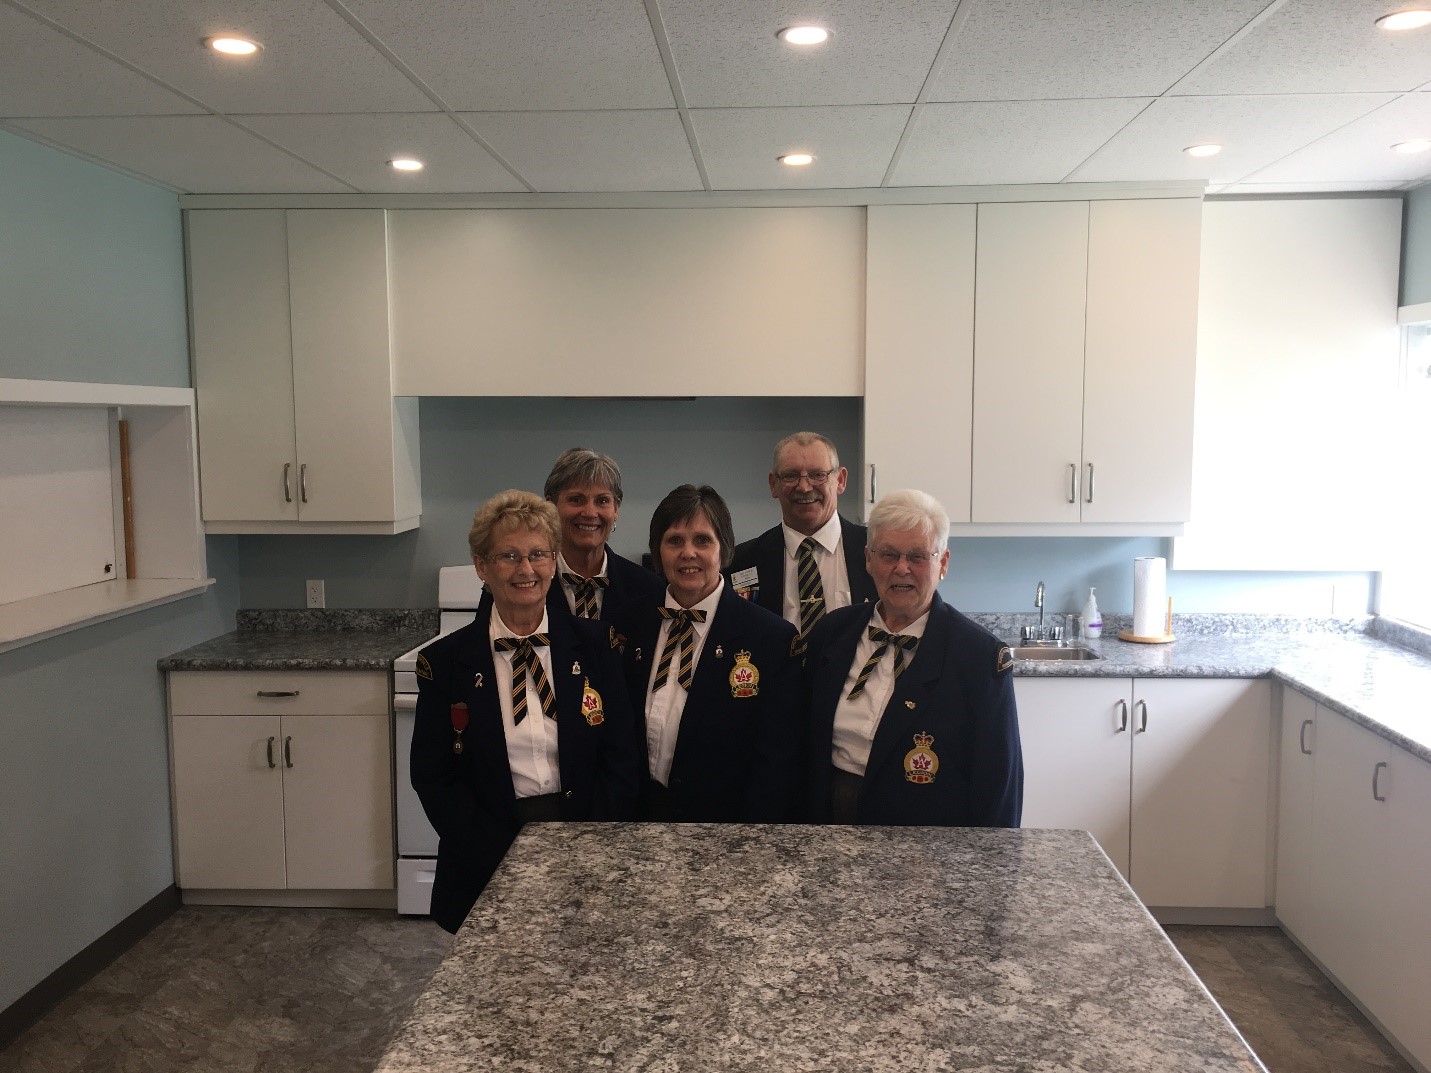 Les membres de la Légion royale canadienne de Ripley et les Dames auxiliaires de la filiale 440 sont très fiers de leur nouvelle cuisine.